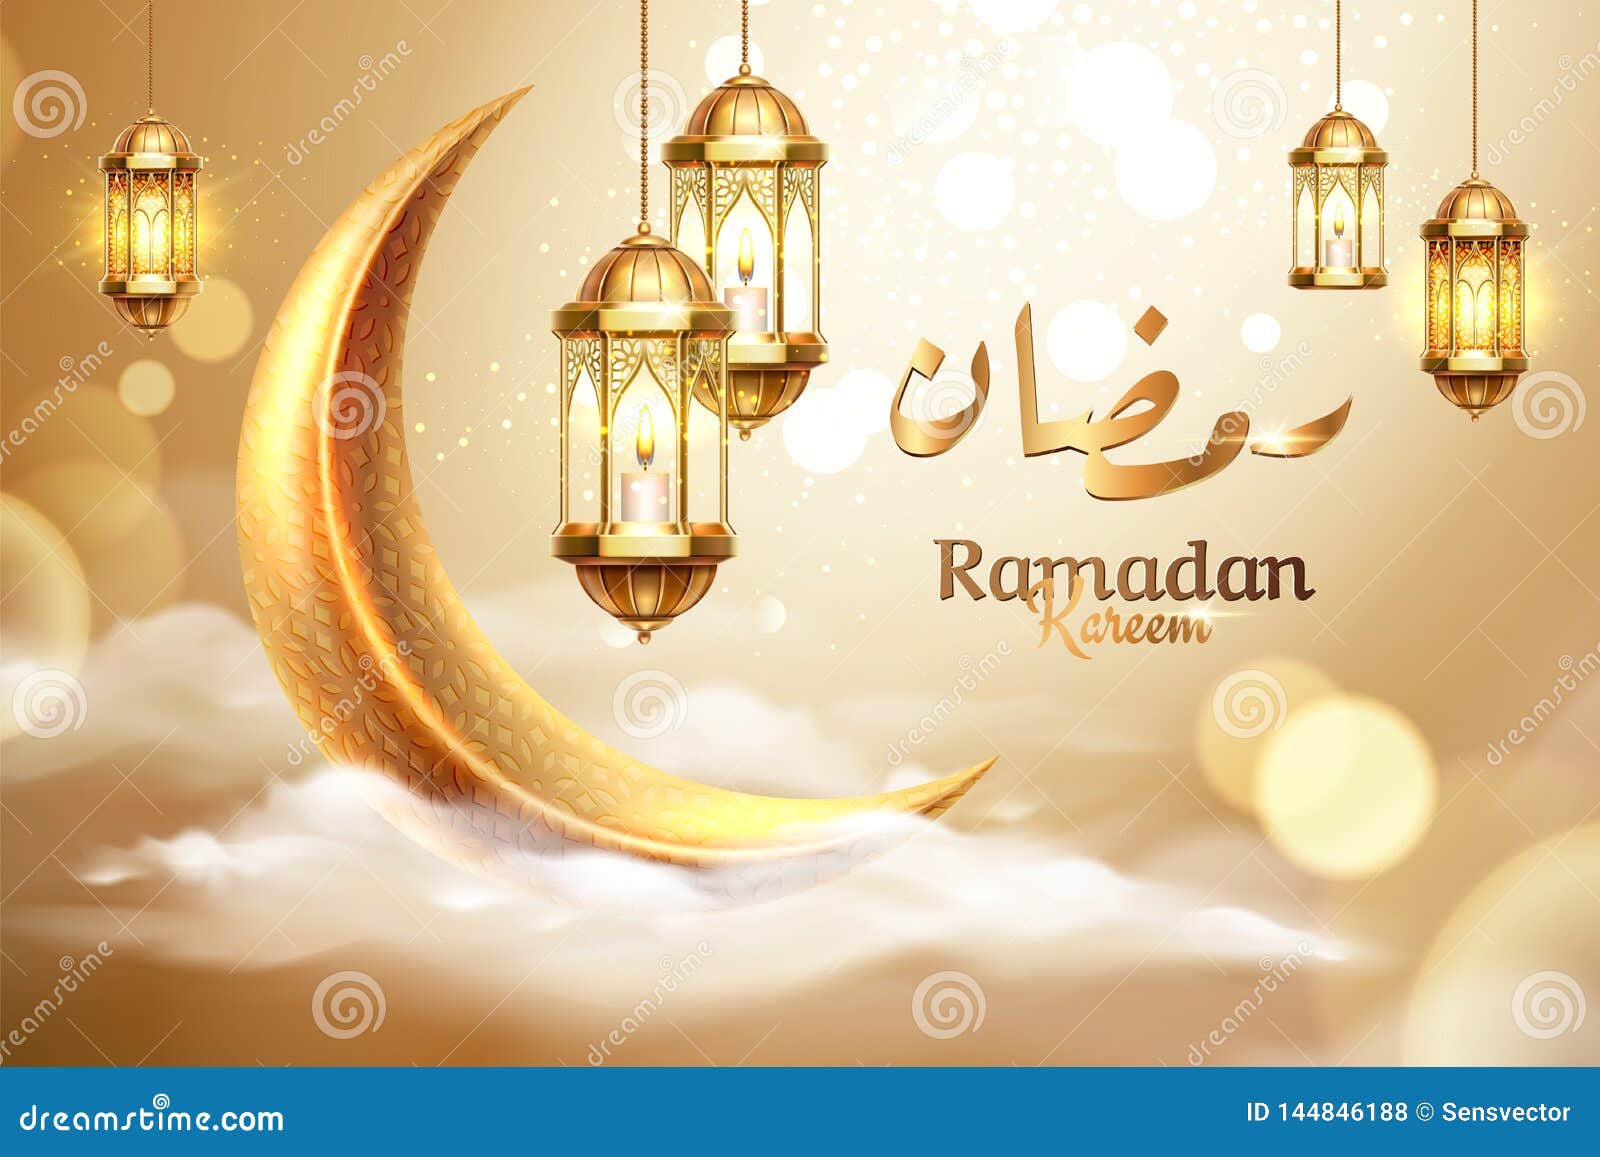 ramadan kareem or ramazan mubarak greeting card